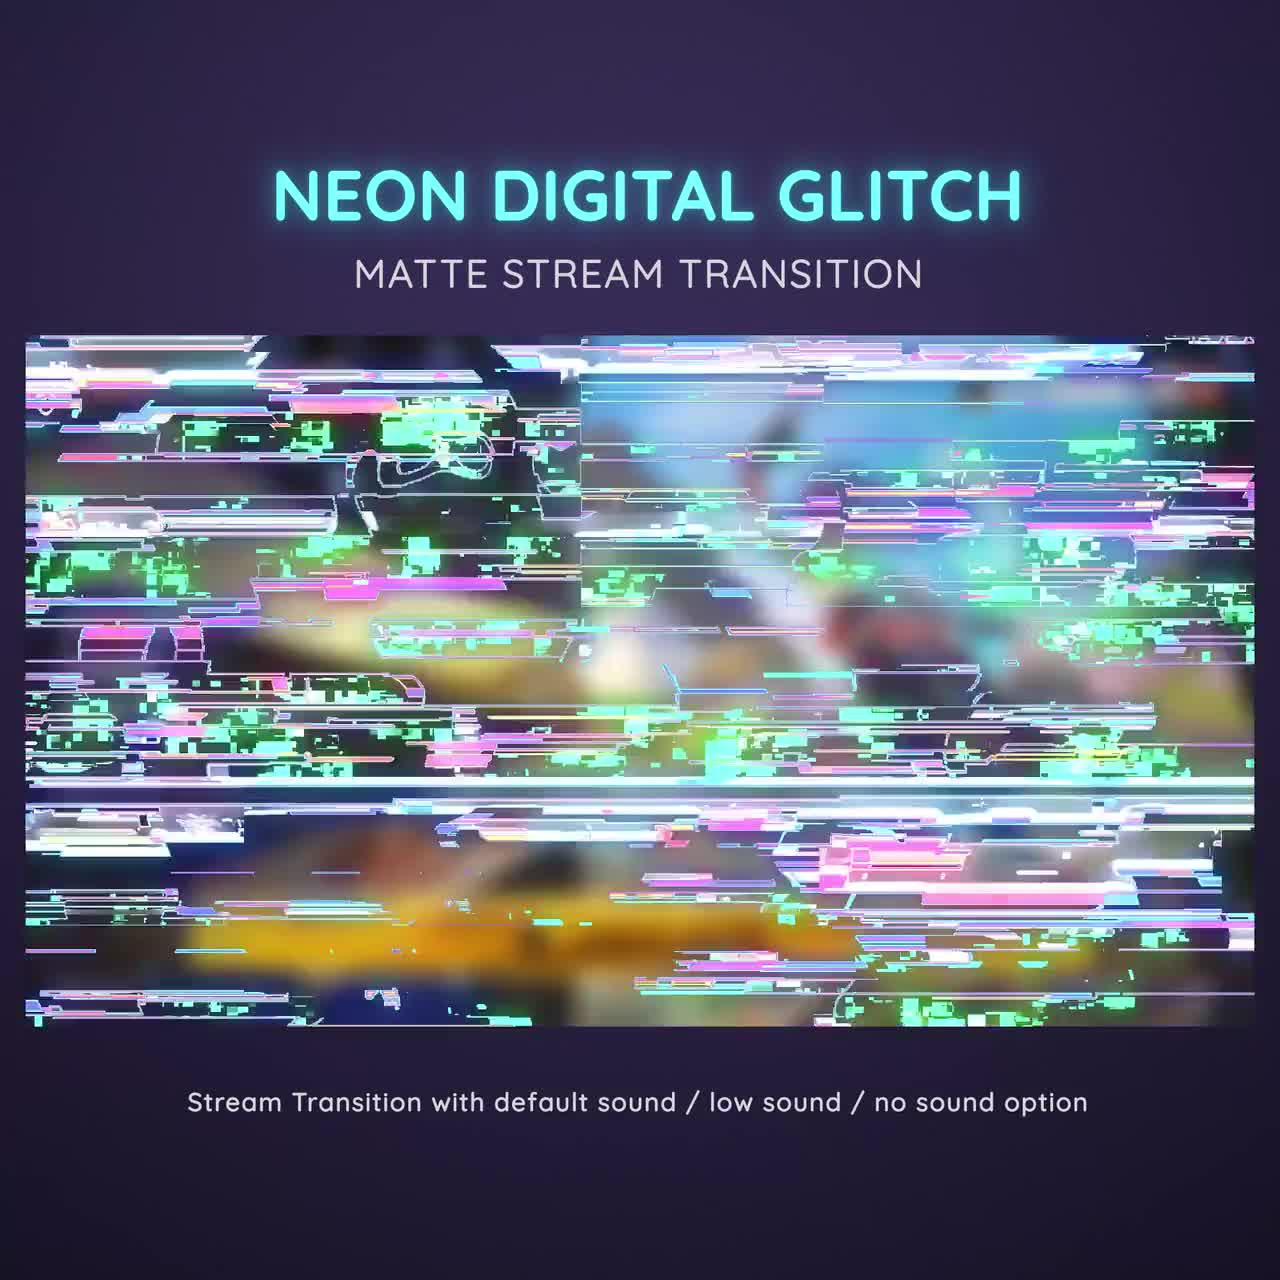 390 Digital Glitch: a Glitchy and Digital-inspired Background